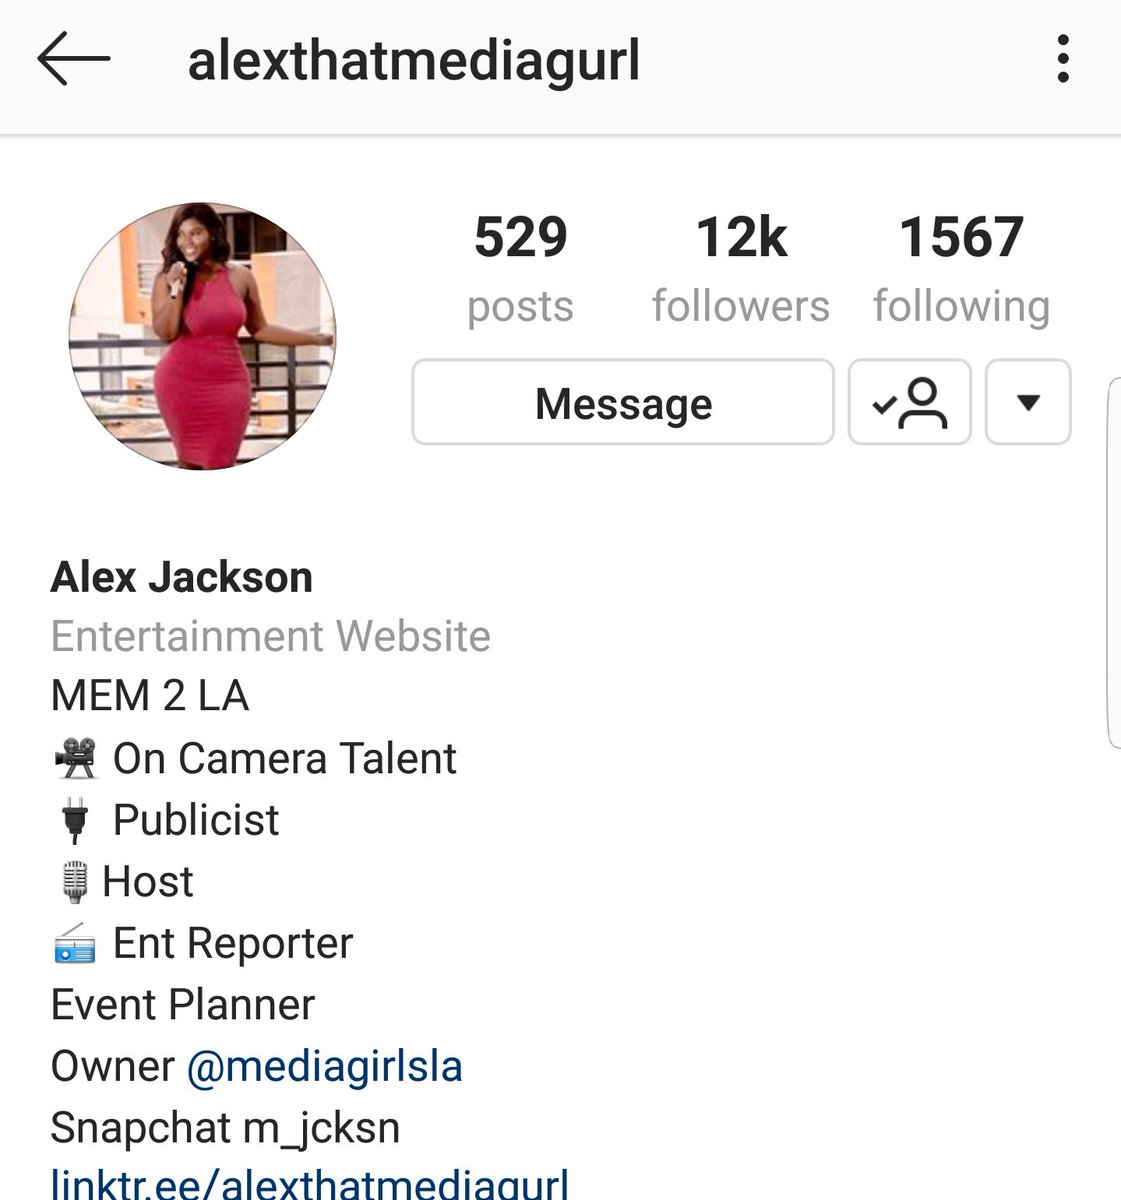 Alex JacksonIG: AlexthatmediagurlOwner of Media Girls LAEntertainment reporterPublicist